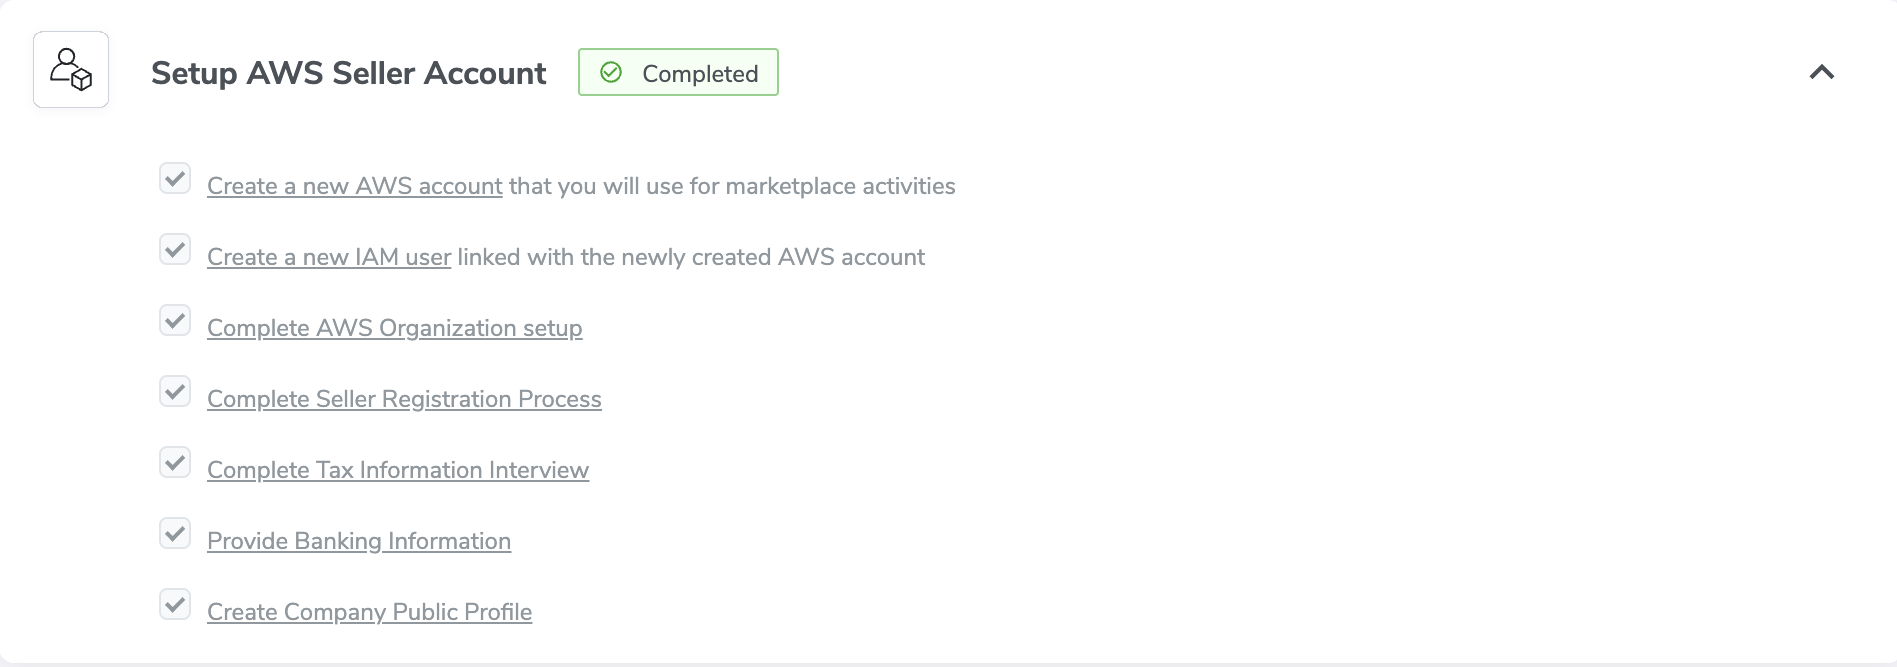 AWS Seller Account Setup